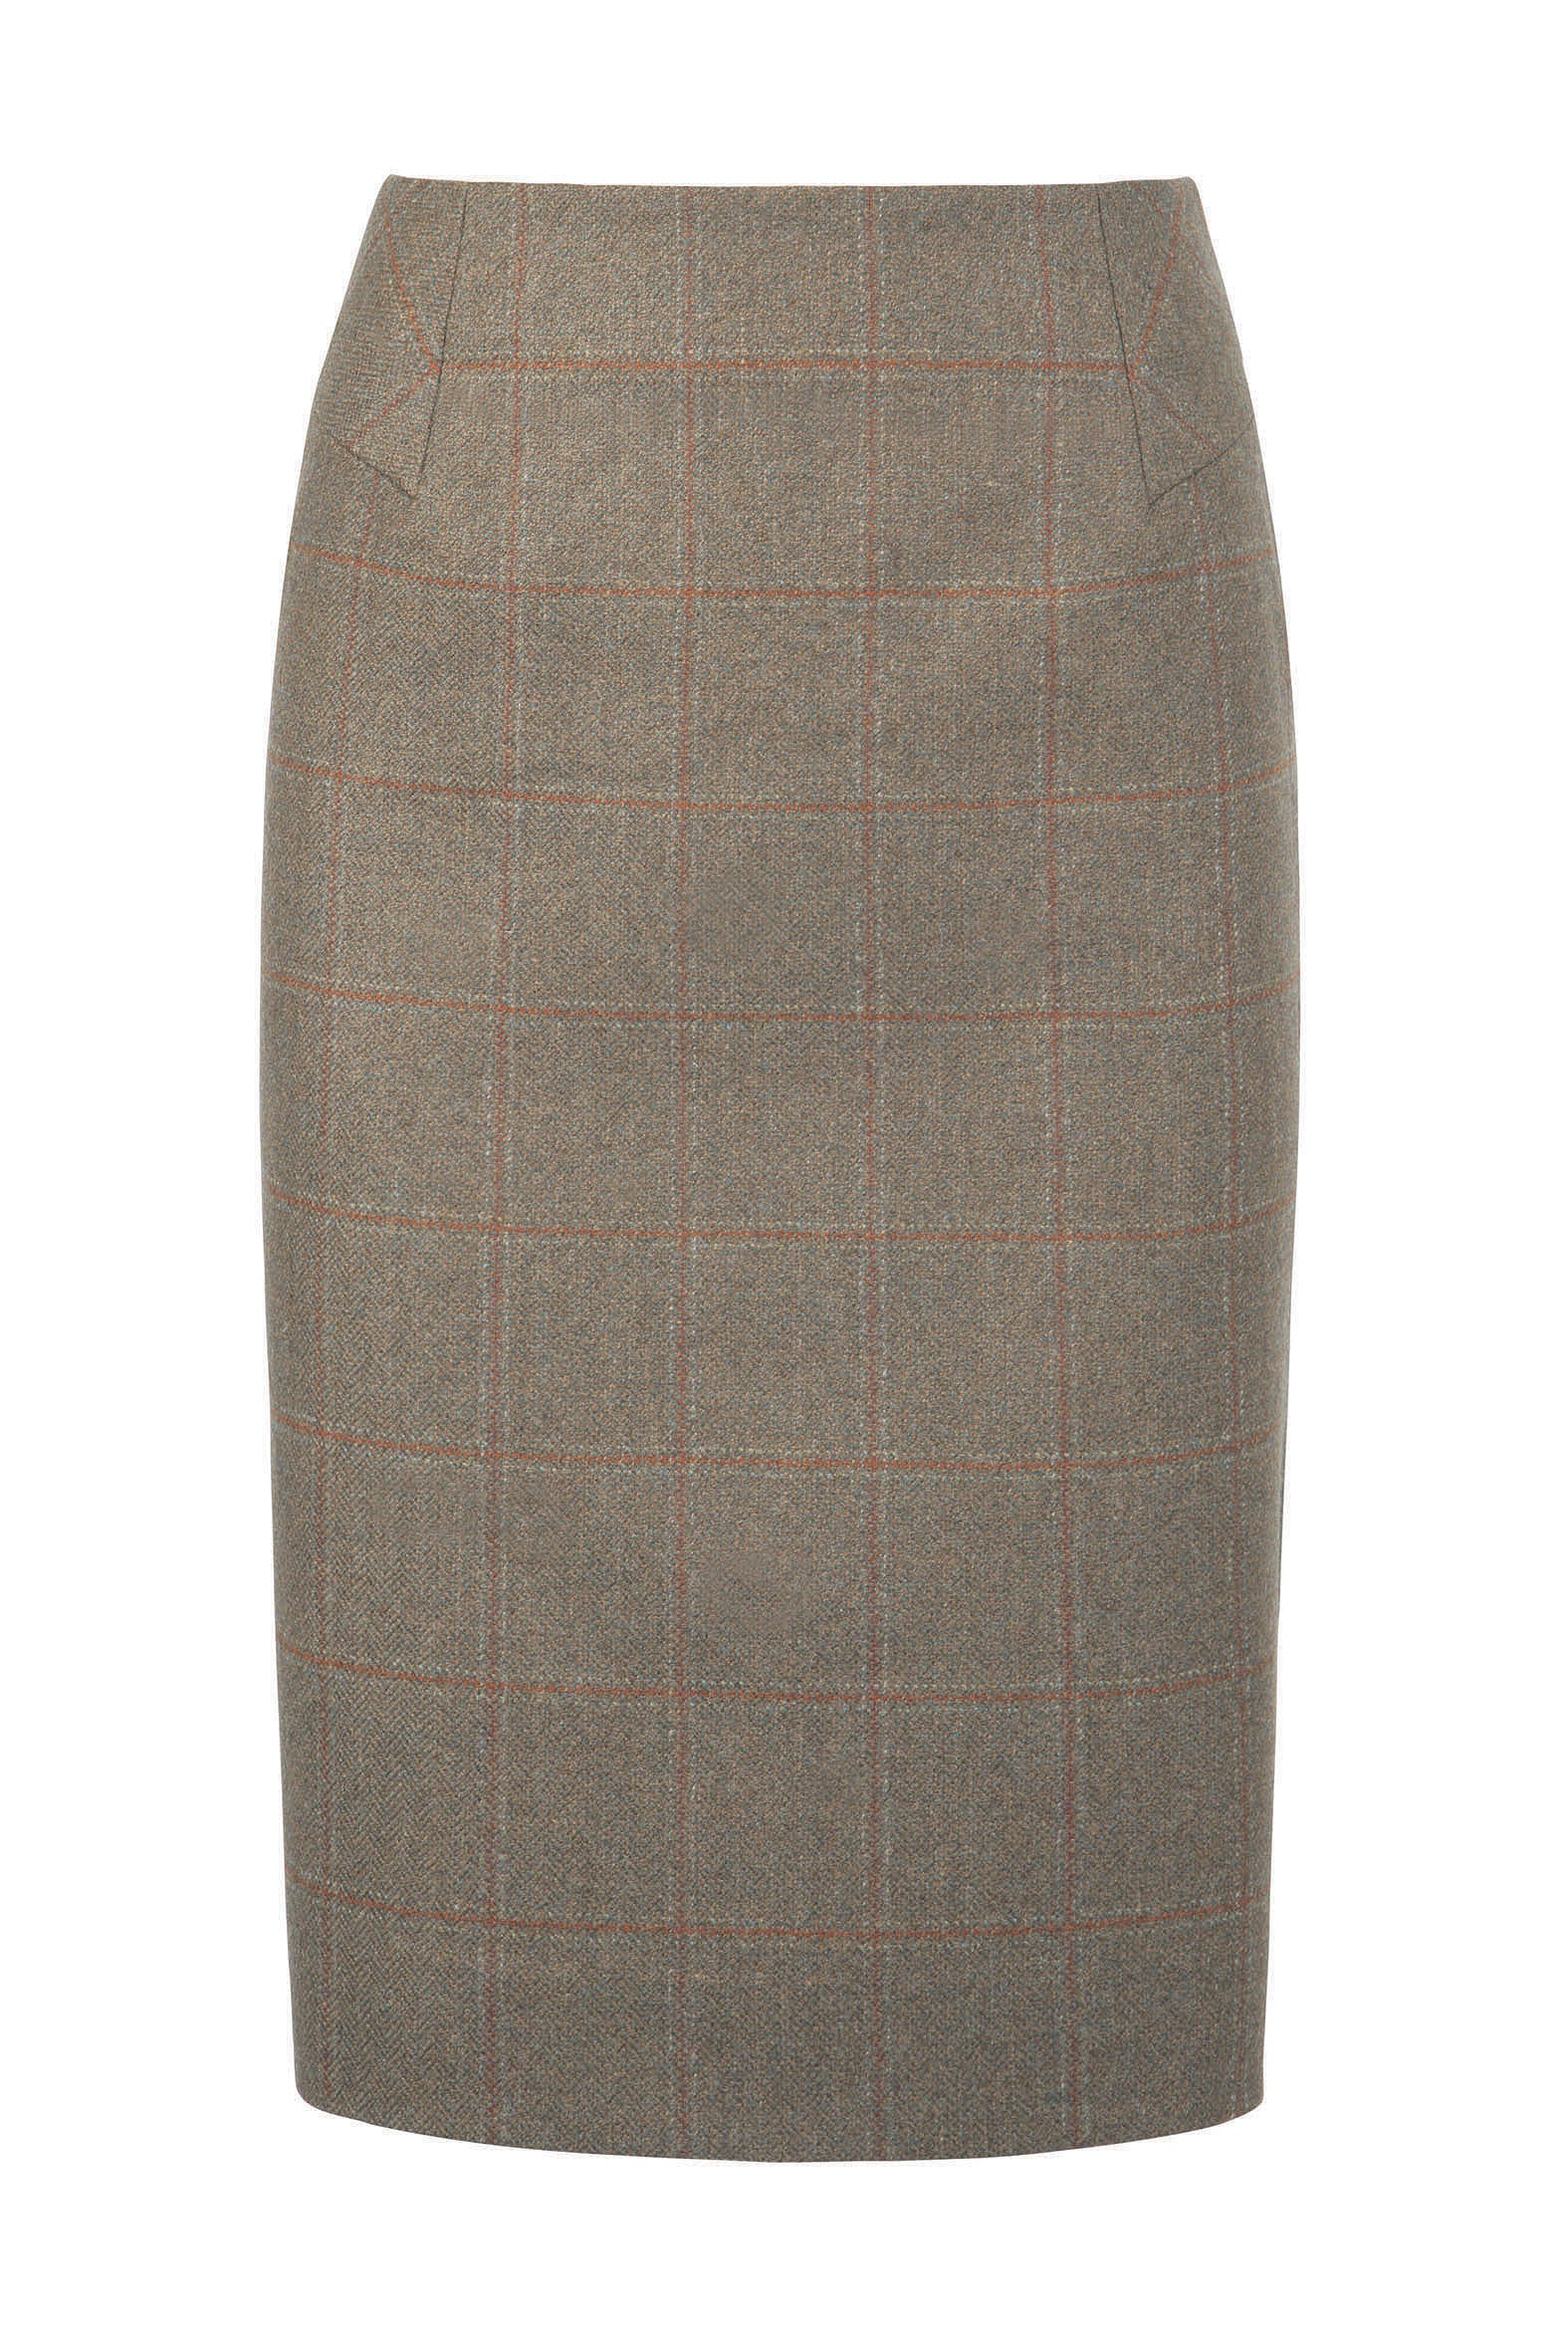 Dubarry Fern Skirt